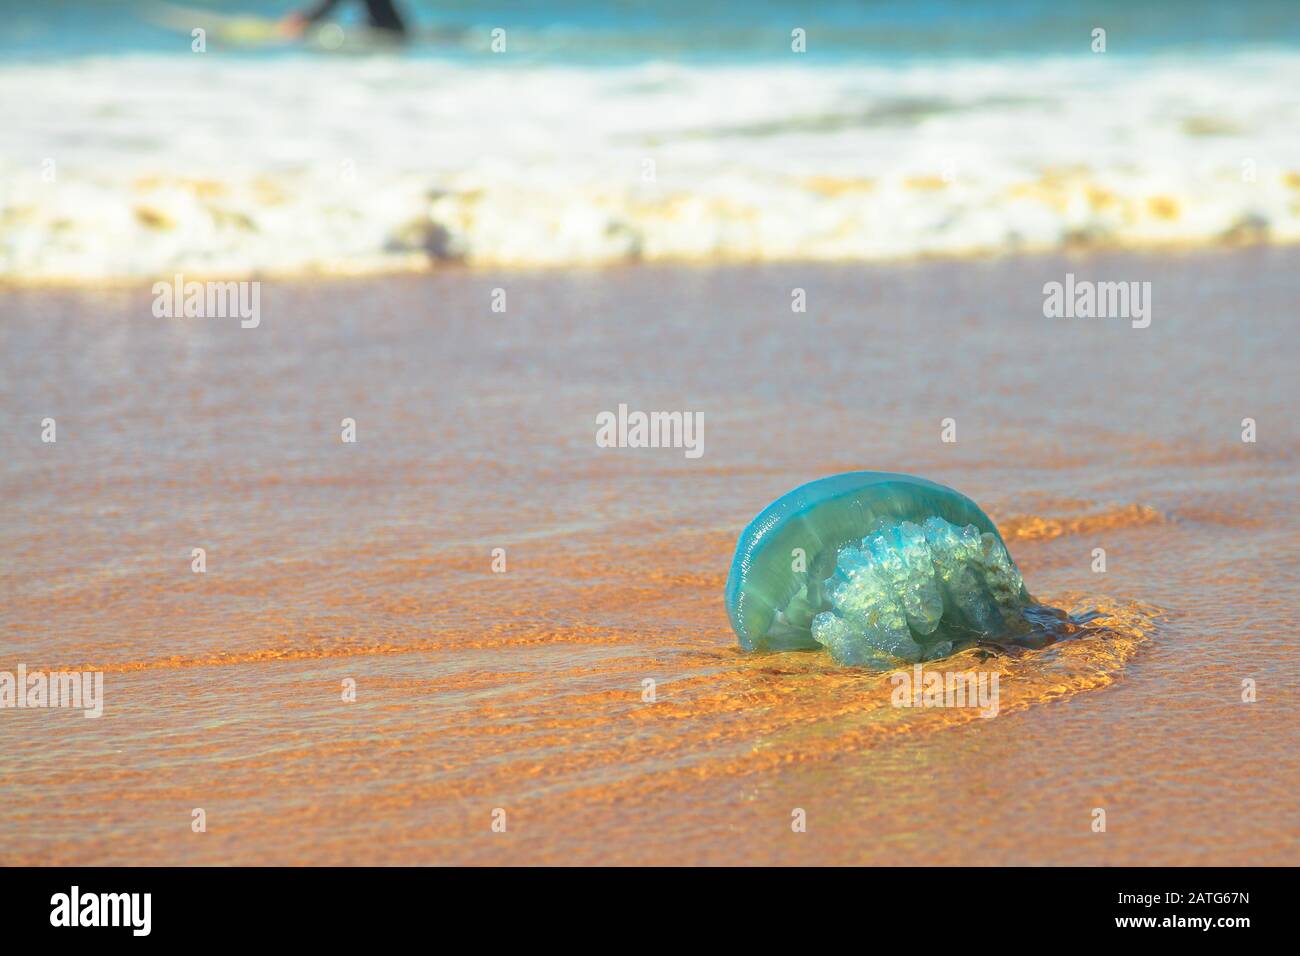 Quallen am strand in wales Stockfotos und -bilder Kaufen - Alamy